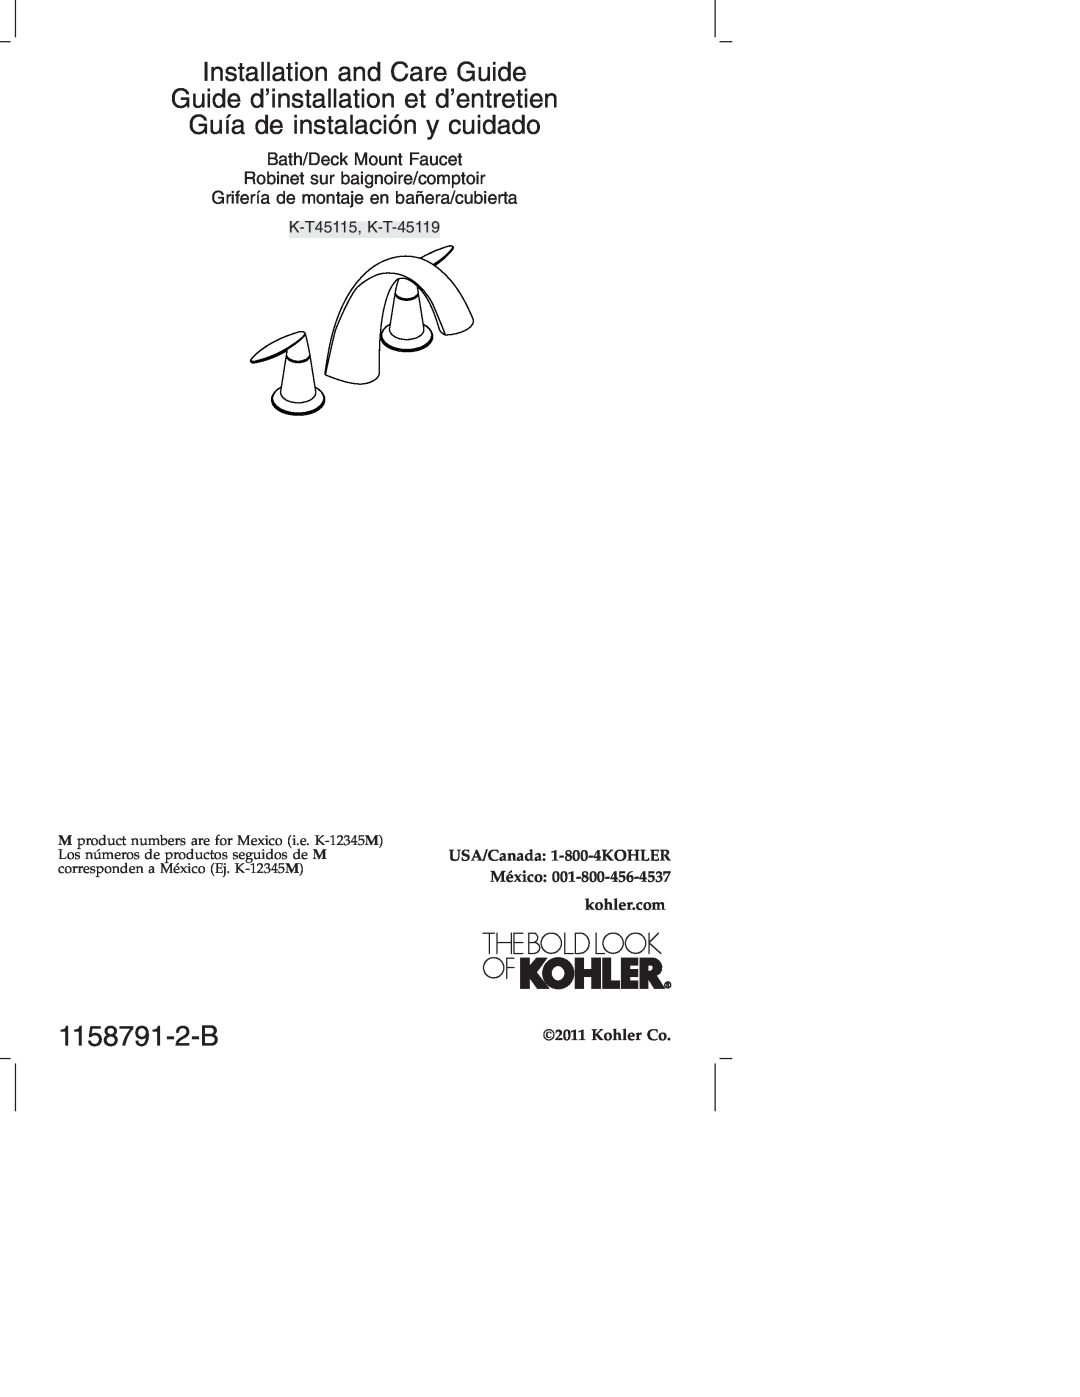 Kohler K-T 45115 manual 1158791-2-B, K-T45115, K-T-45119, Installation and Care Guide, Bath/Deck Mount Faucet, Kohler Co 